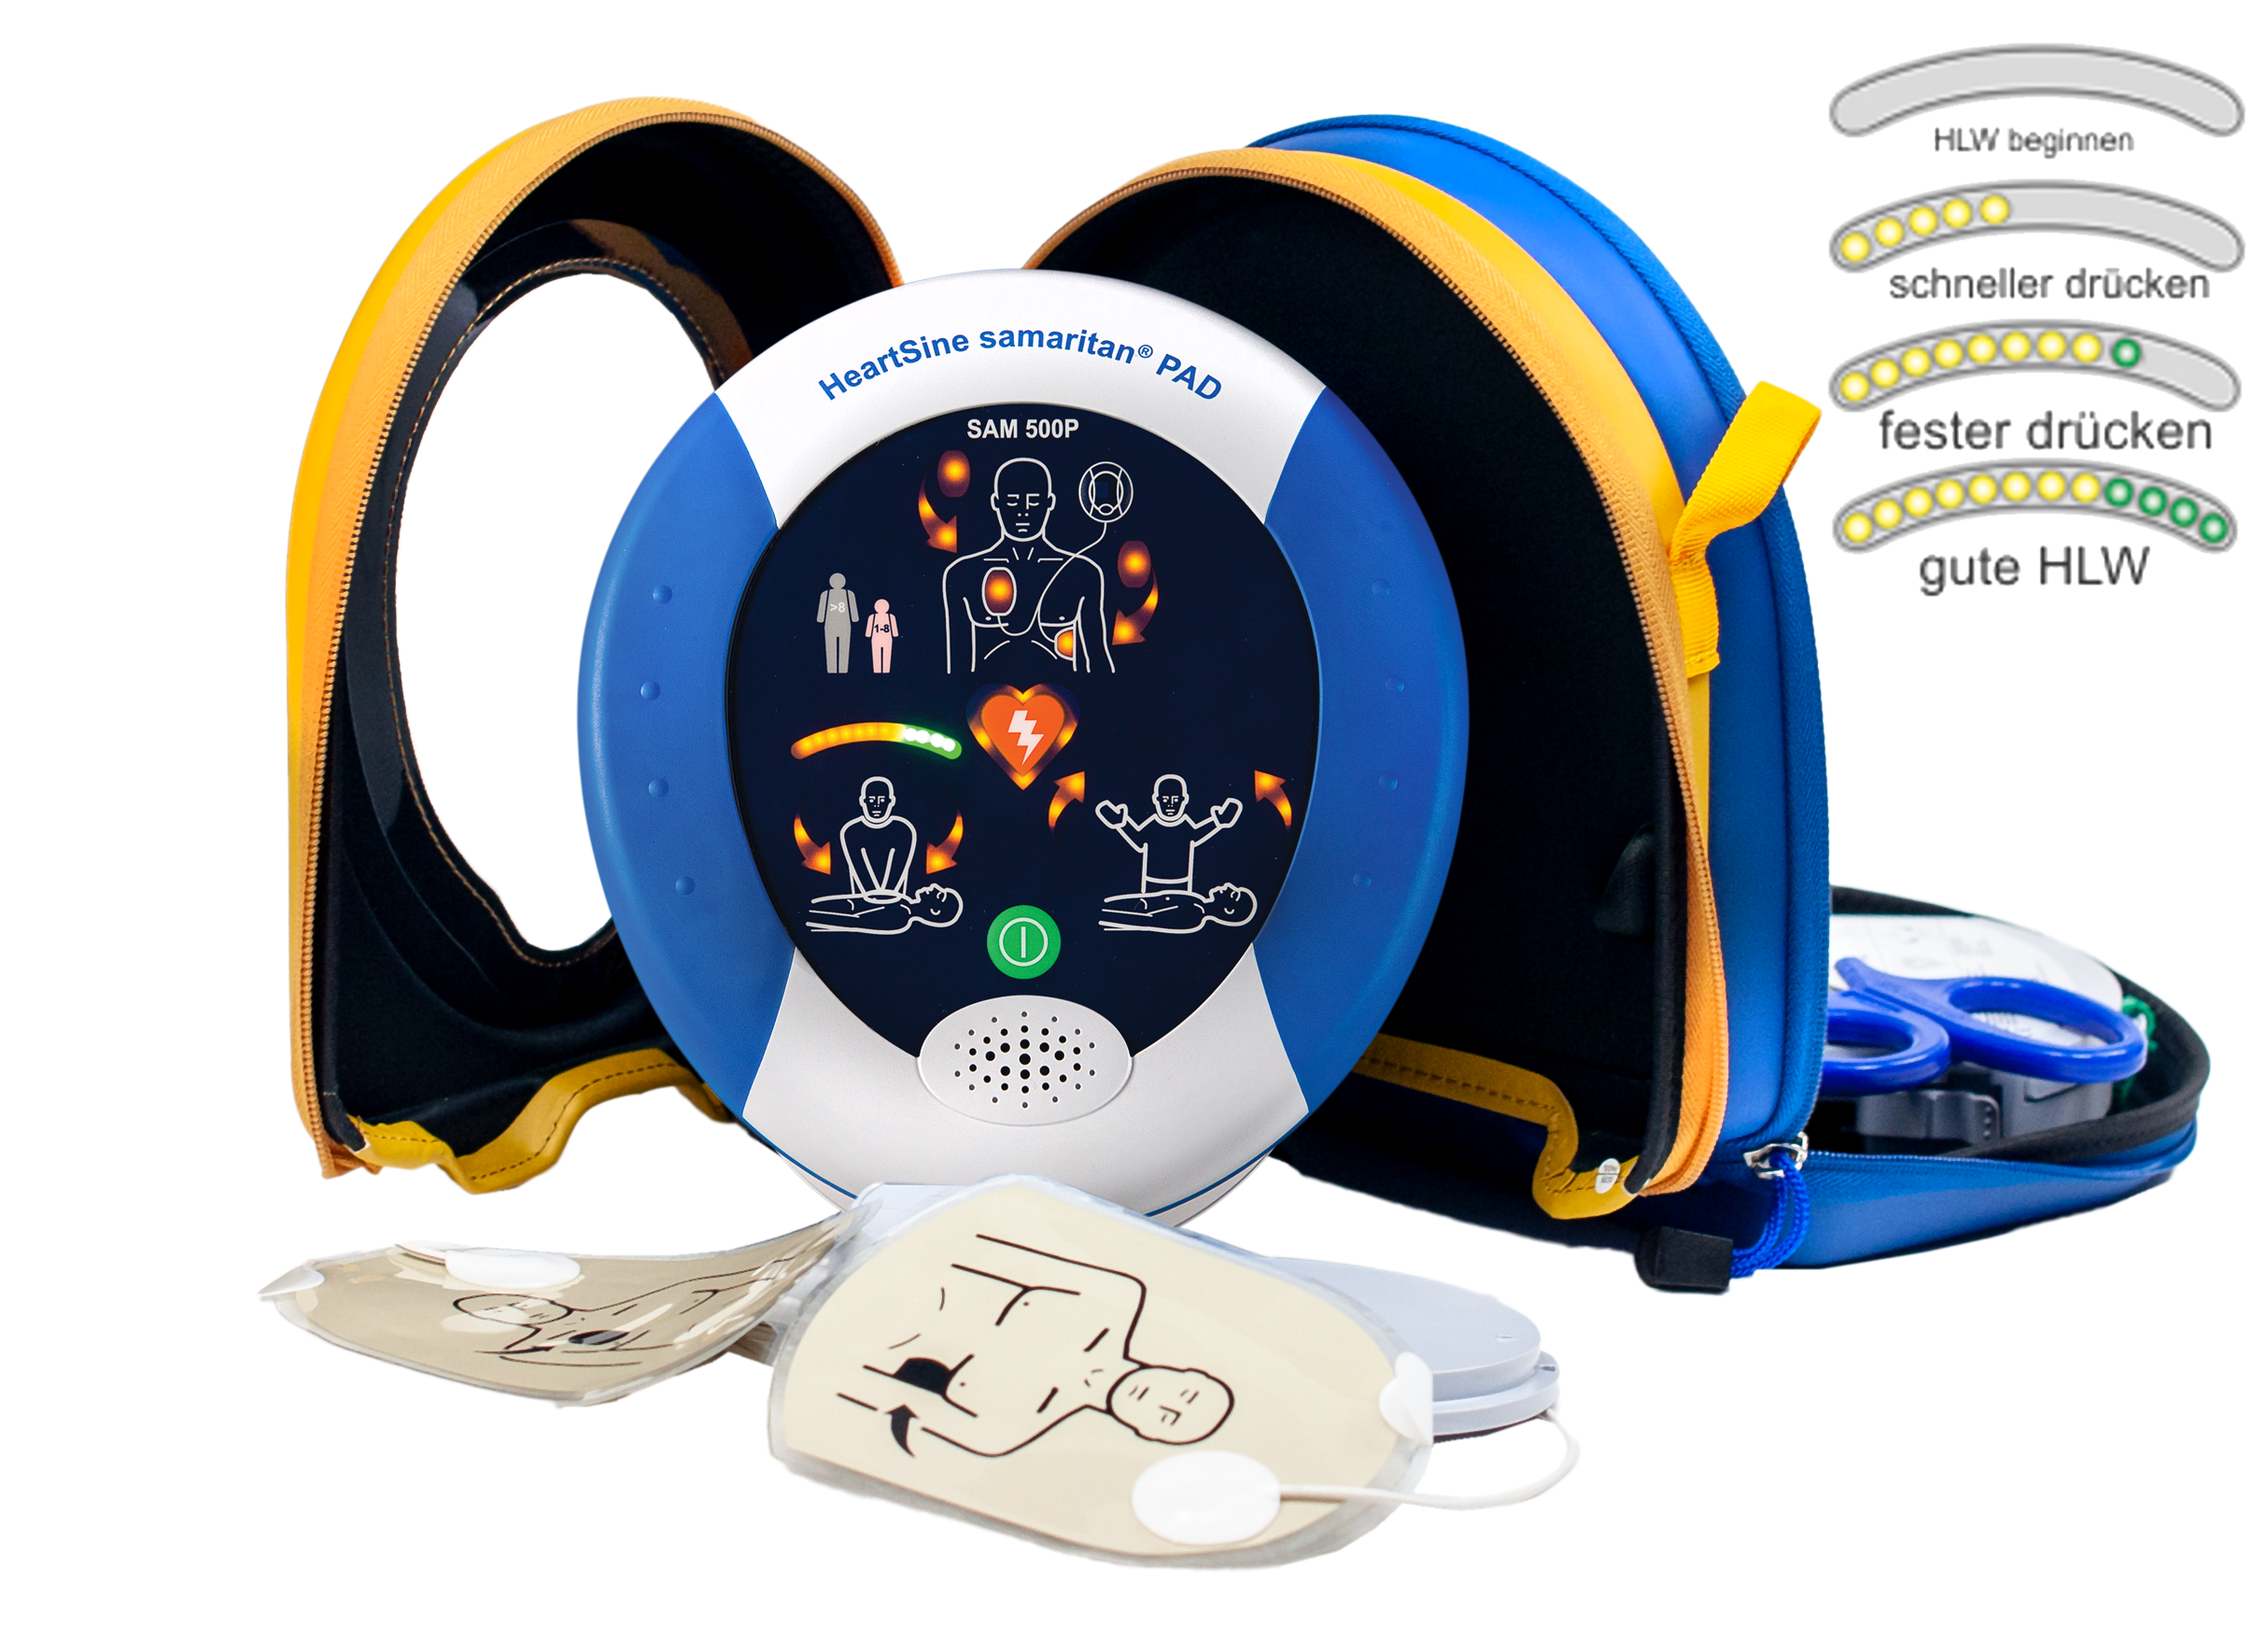 HeartSine SAM 500P Reanimations-Defibrillator/AED, mit Herzdruckmassage-Kontrolle & Echtzeitanleitung, 8 J. Herstellergarantie